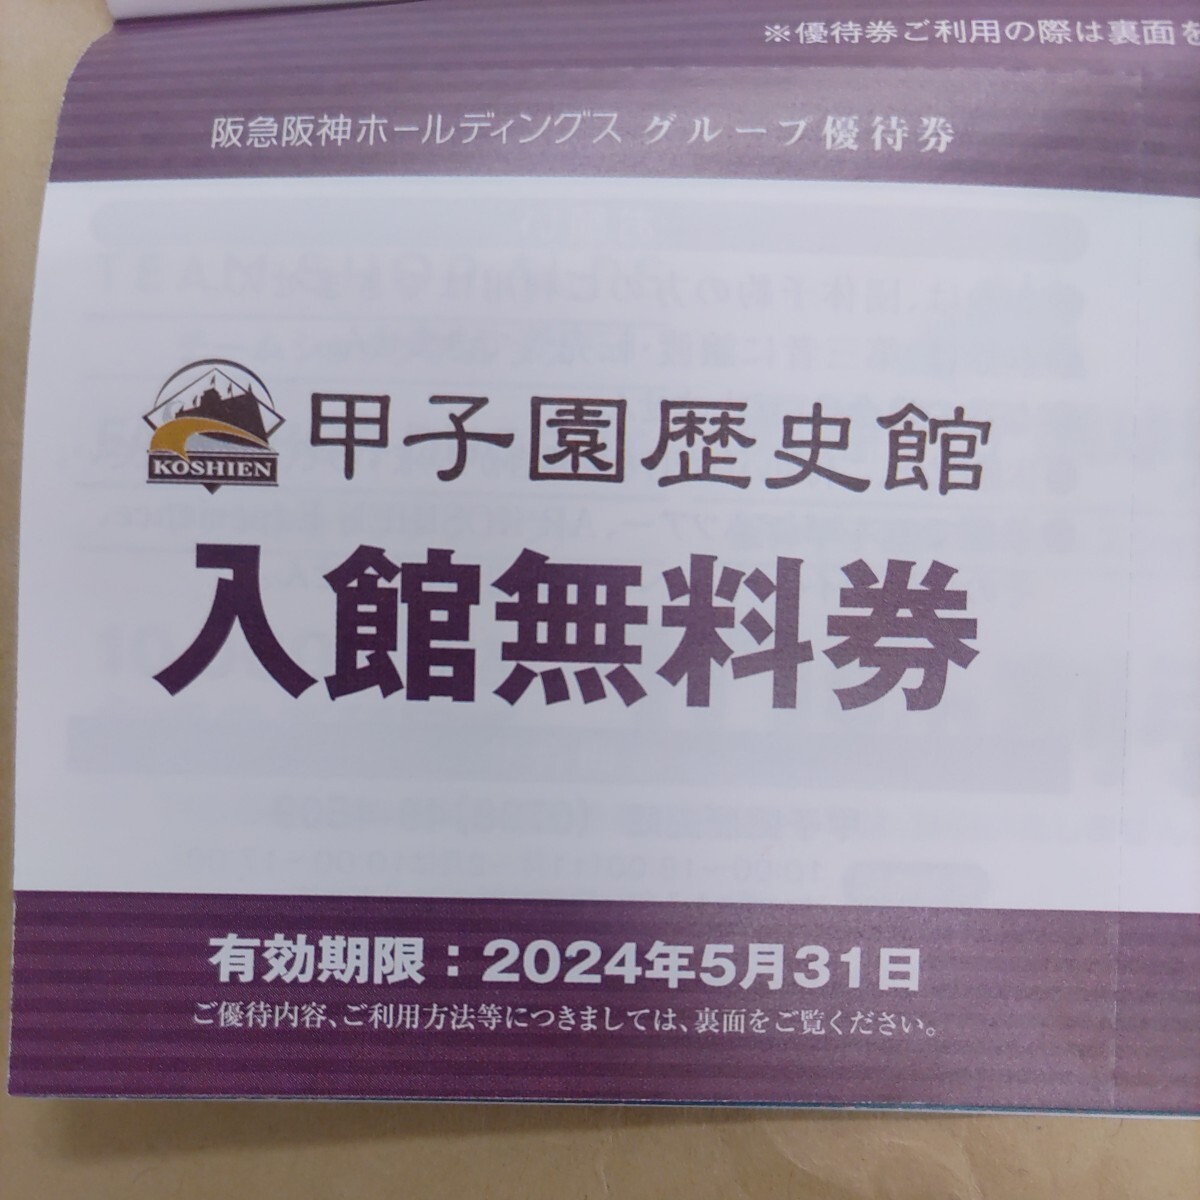 . внезапный Hanshin группа пригласительный билет. Koshien история дом павильон бесплатный входить павильон талон 4 листов до 100 иен ( обычная почта включая доставку )